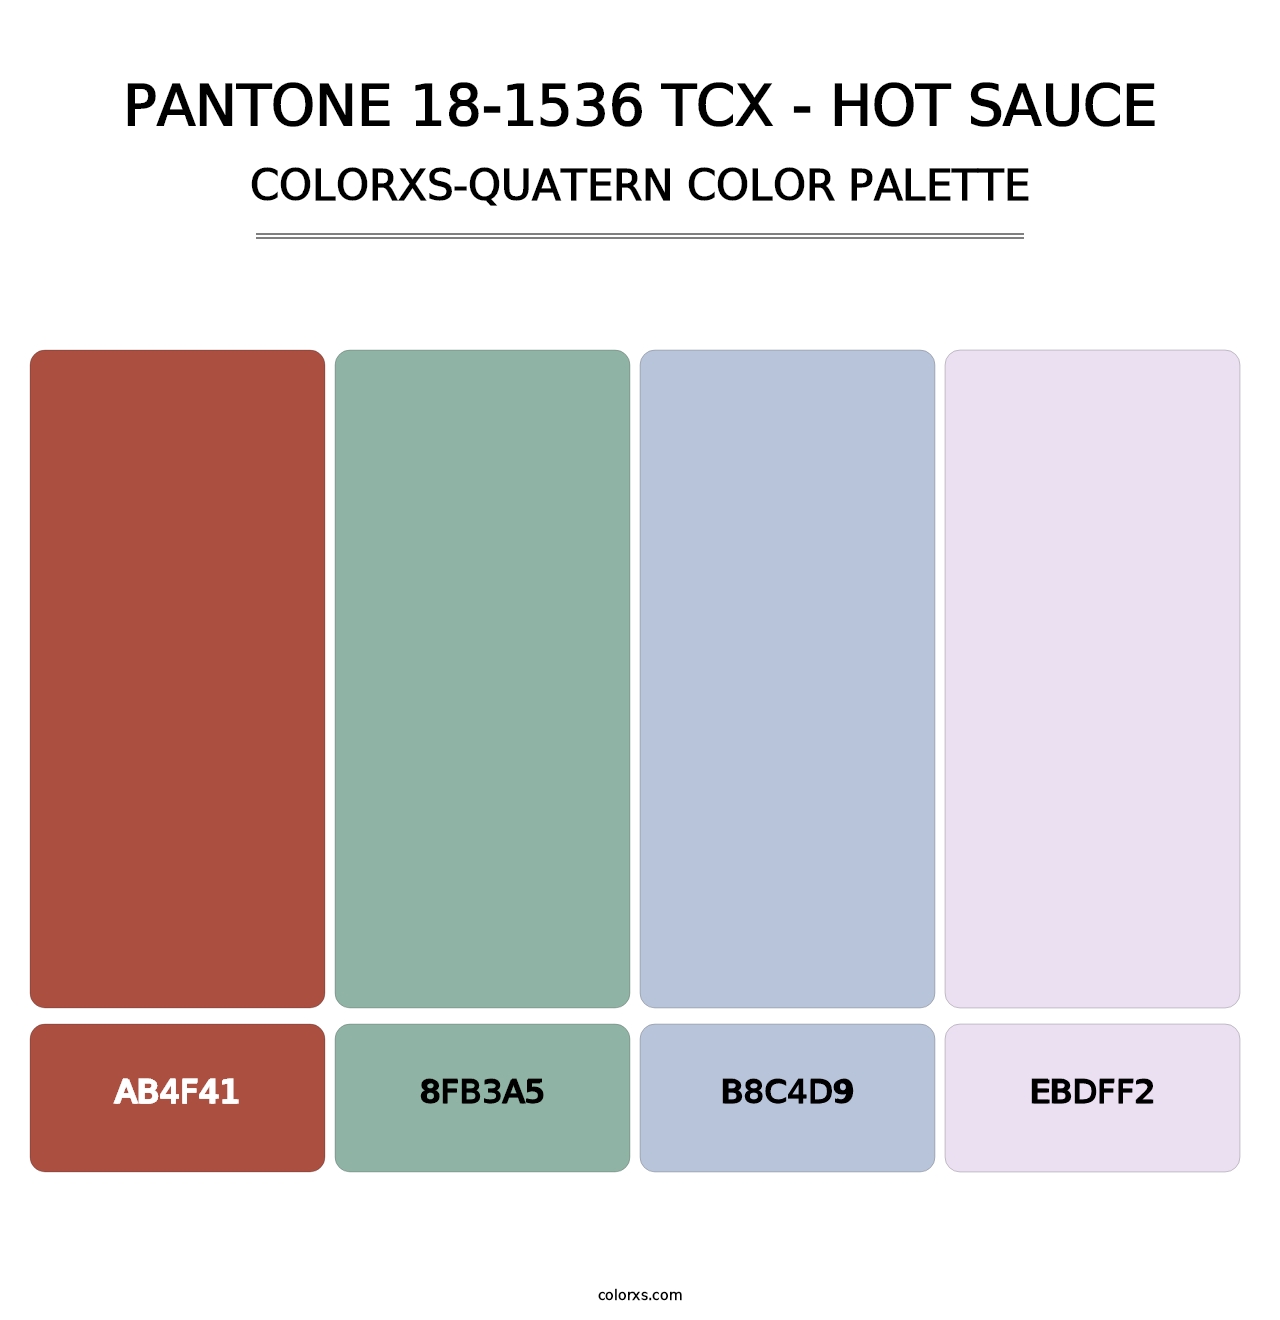 PANTONE 18-1536 TCX - Hot Sauce - Colorxs Quatern Palette